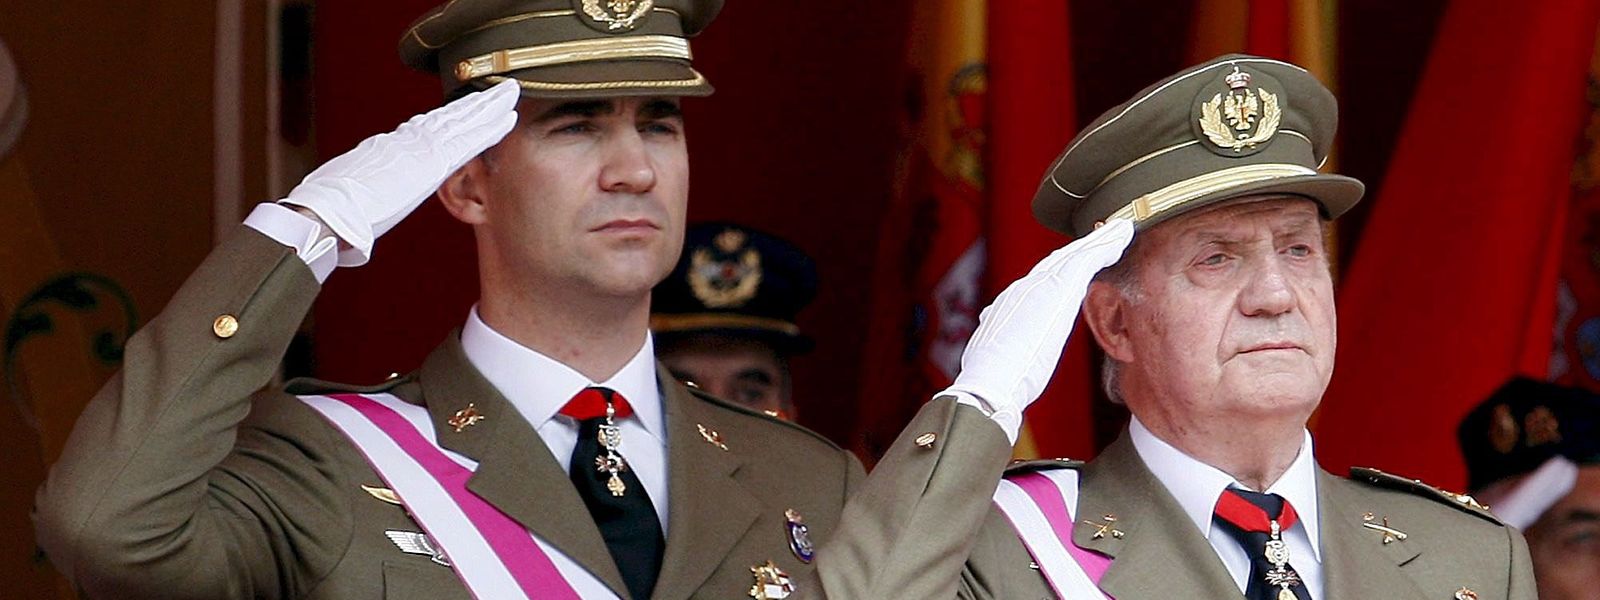 Juan Carlos (r), ehemaliger König von Spanien, und sein Sohn ehemaliger Kronprinz Felipe, salutieren bei einer Militärparade. Felipe, aktueller König von Spanien, hat nach einem neuen Skandal um seinen Vater drastische Maßnahmen ergriffen.